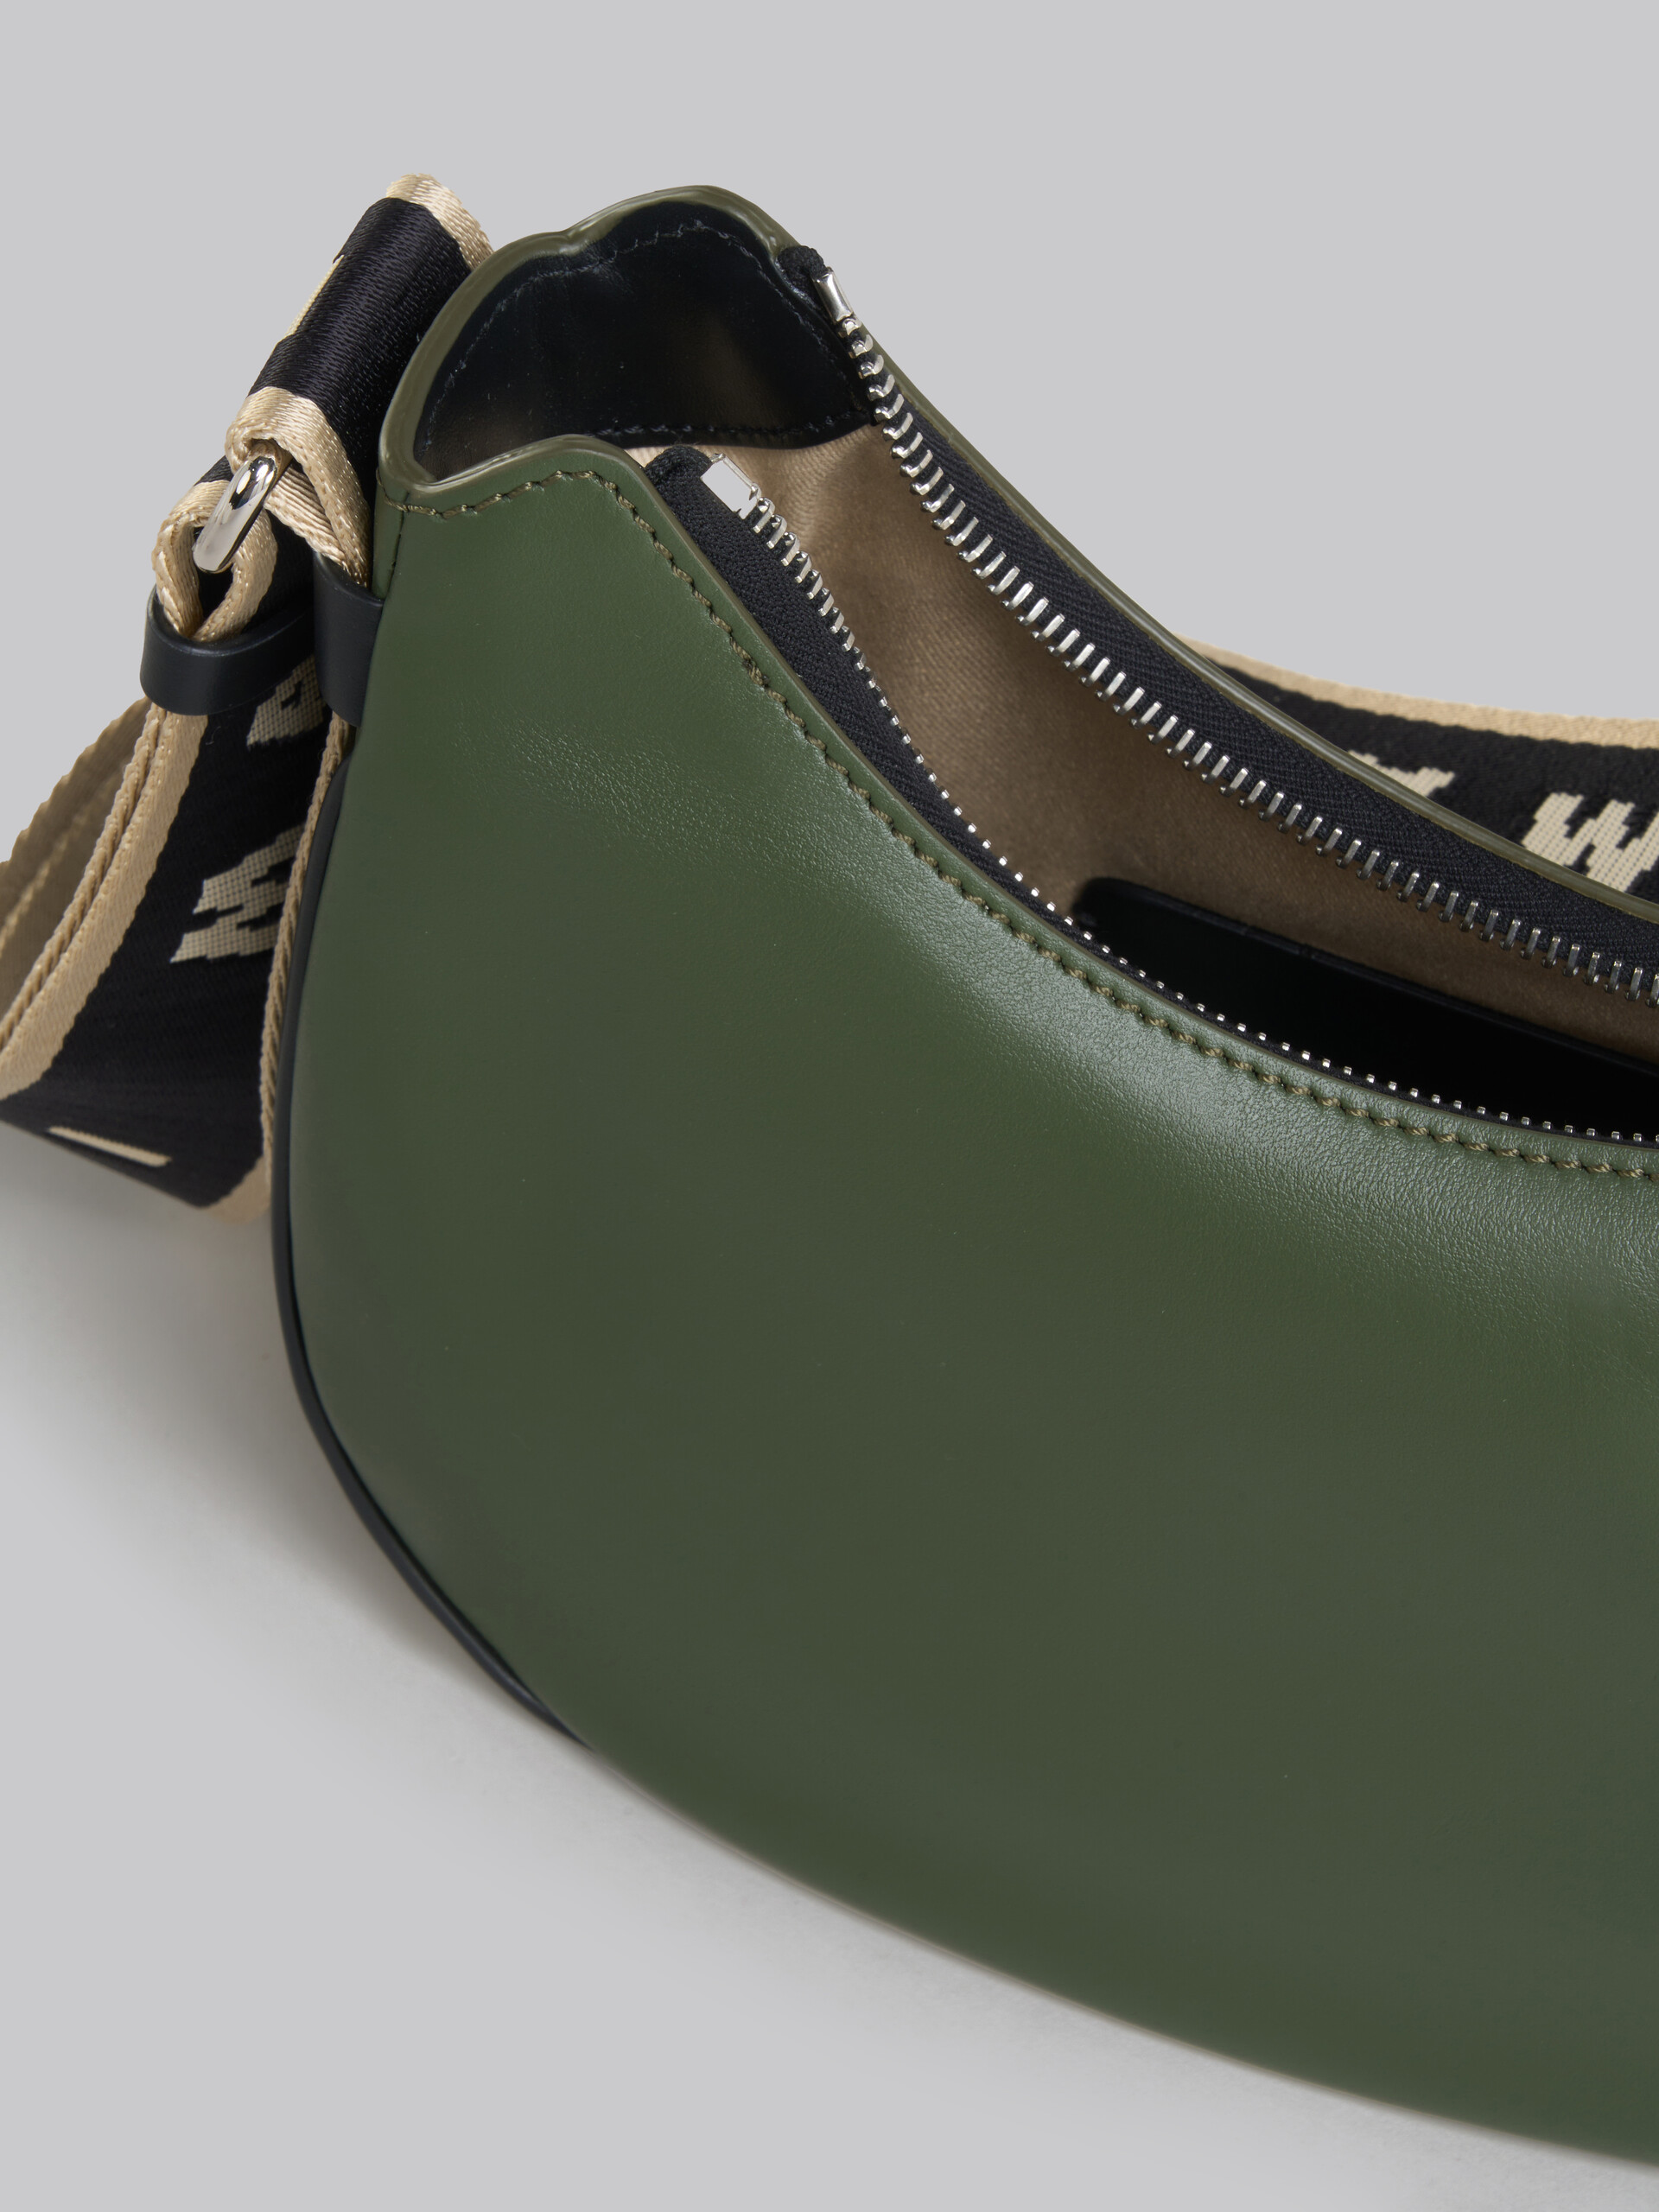 Bey Bag in green leather - Shoulder Bag - Image 4